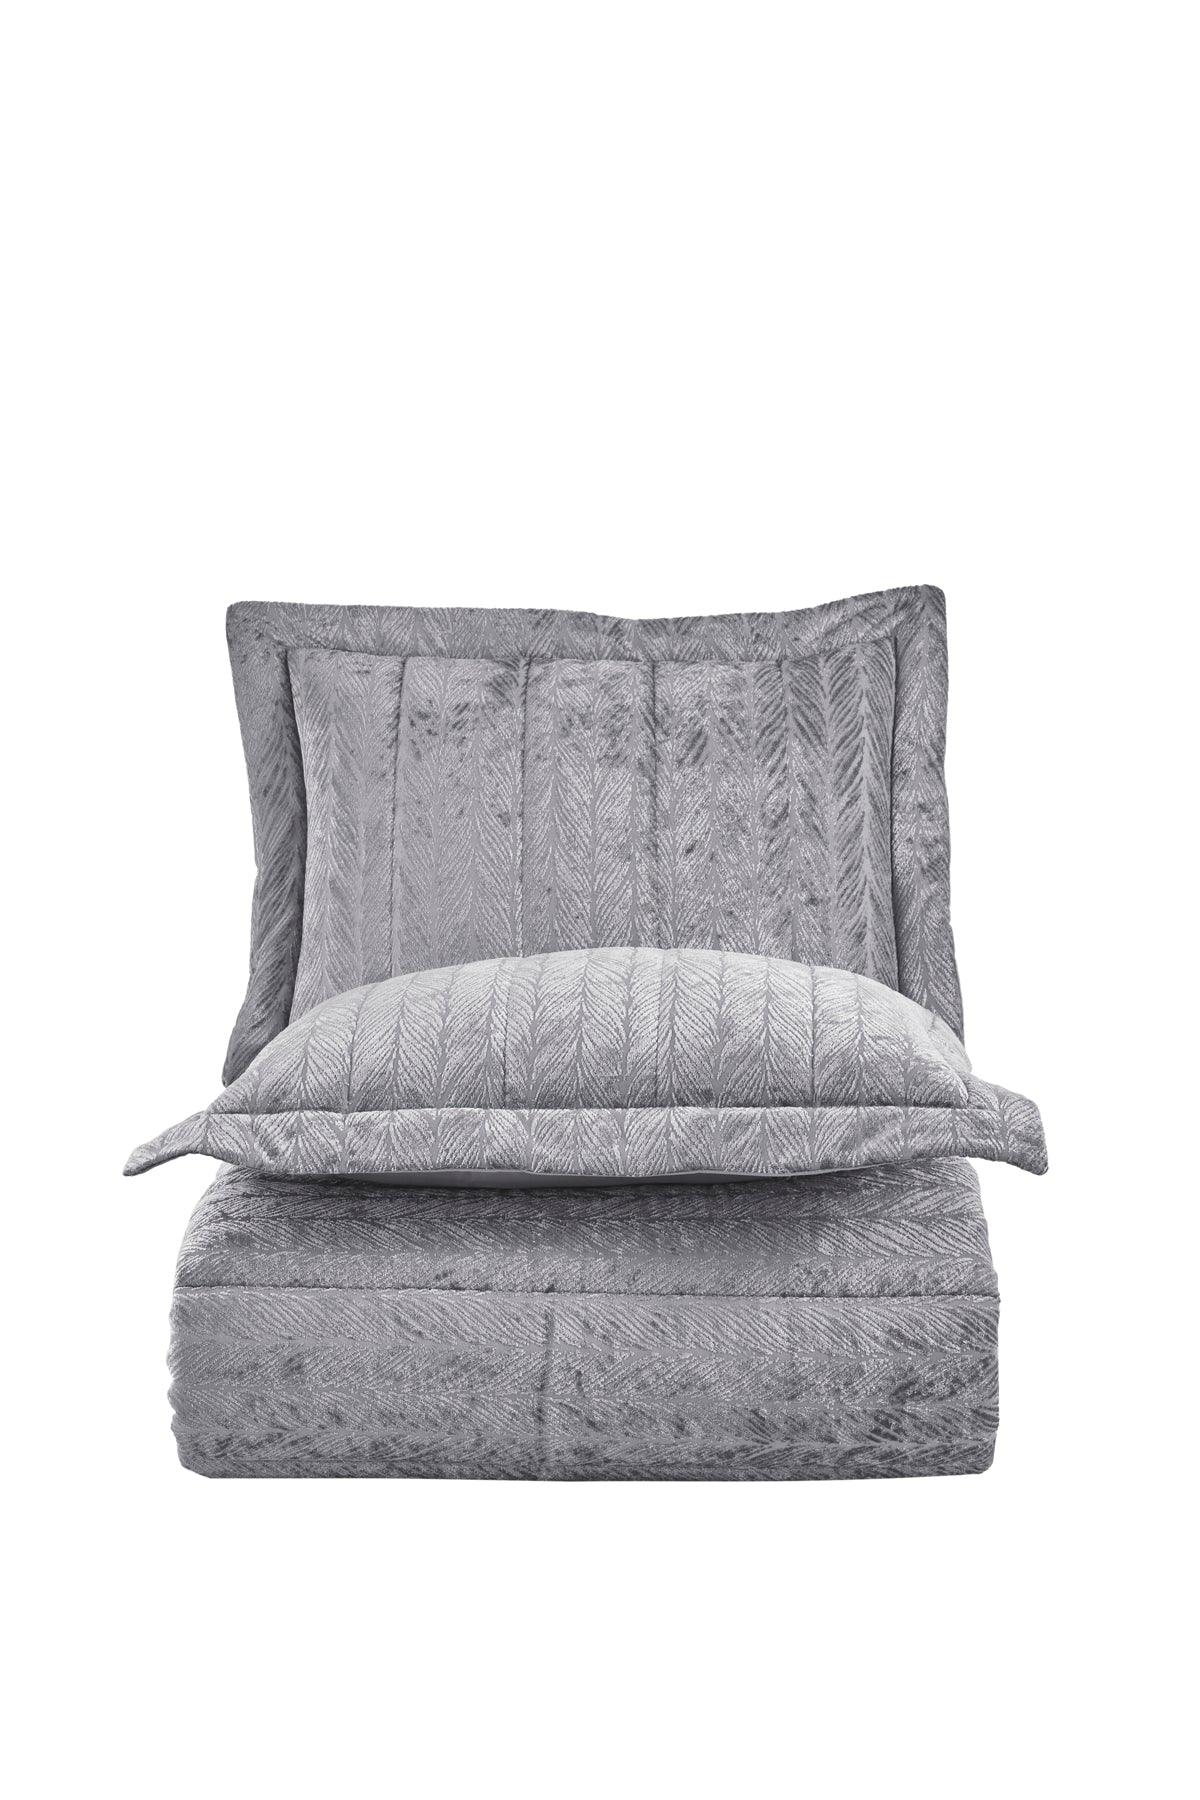 Comfort yeni nesil uykuseti - 3 parça Velvet Gümüş (230x220cm) - Elart Home